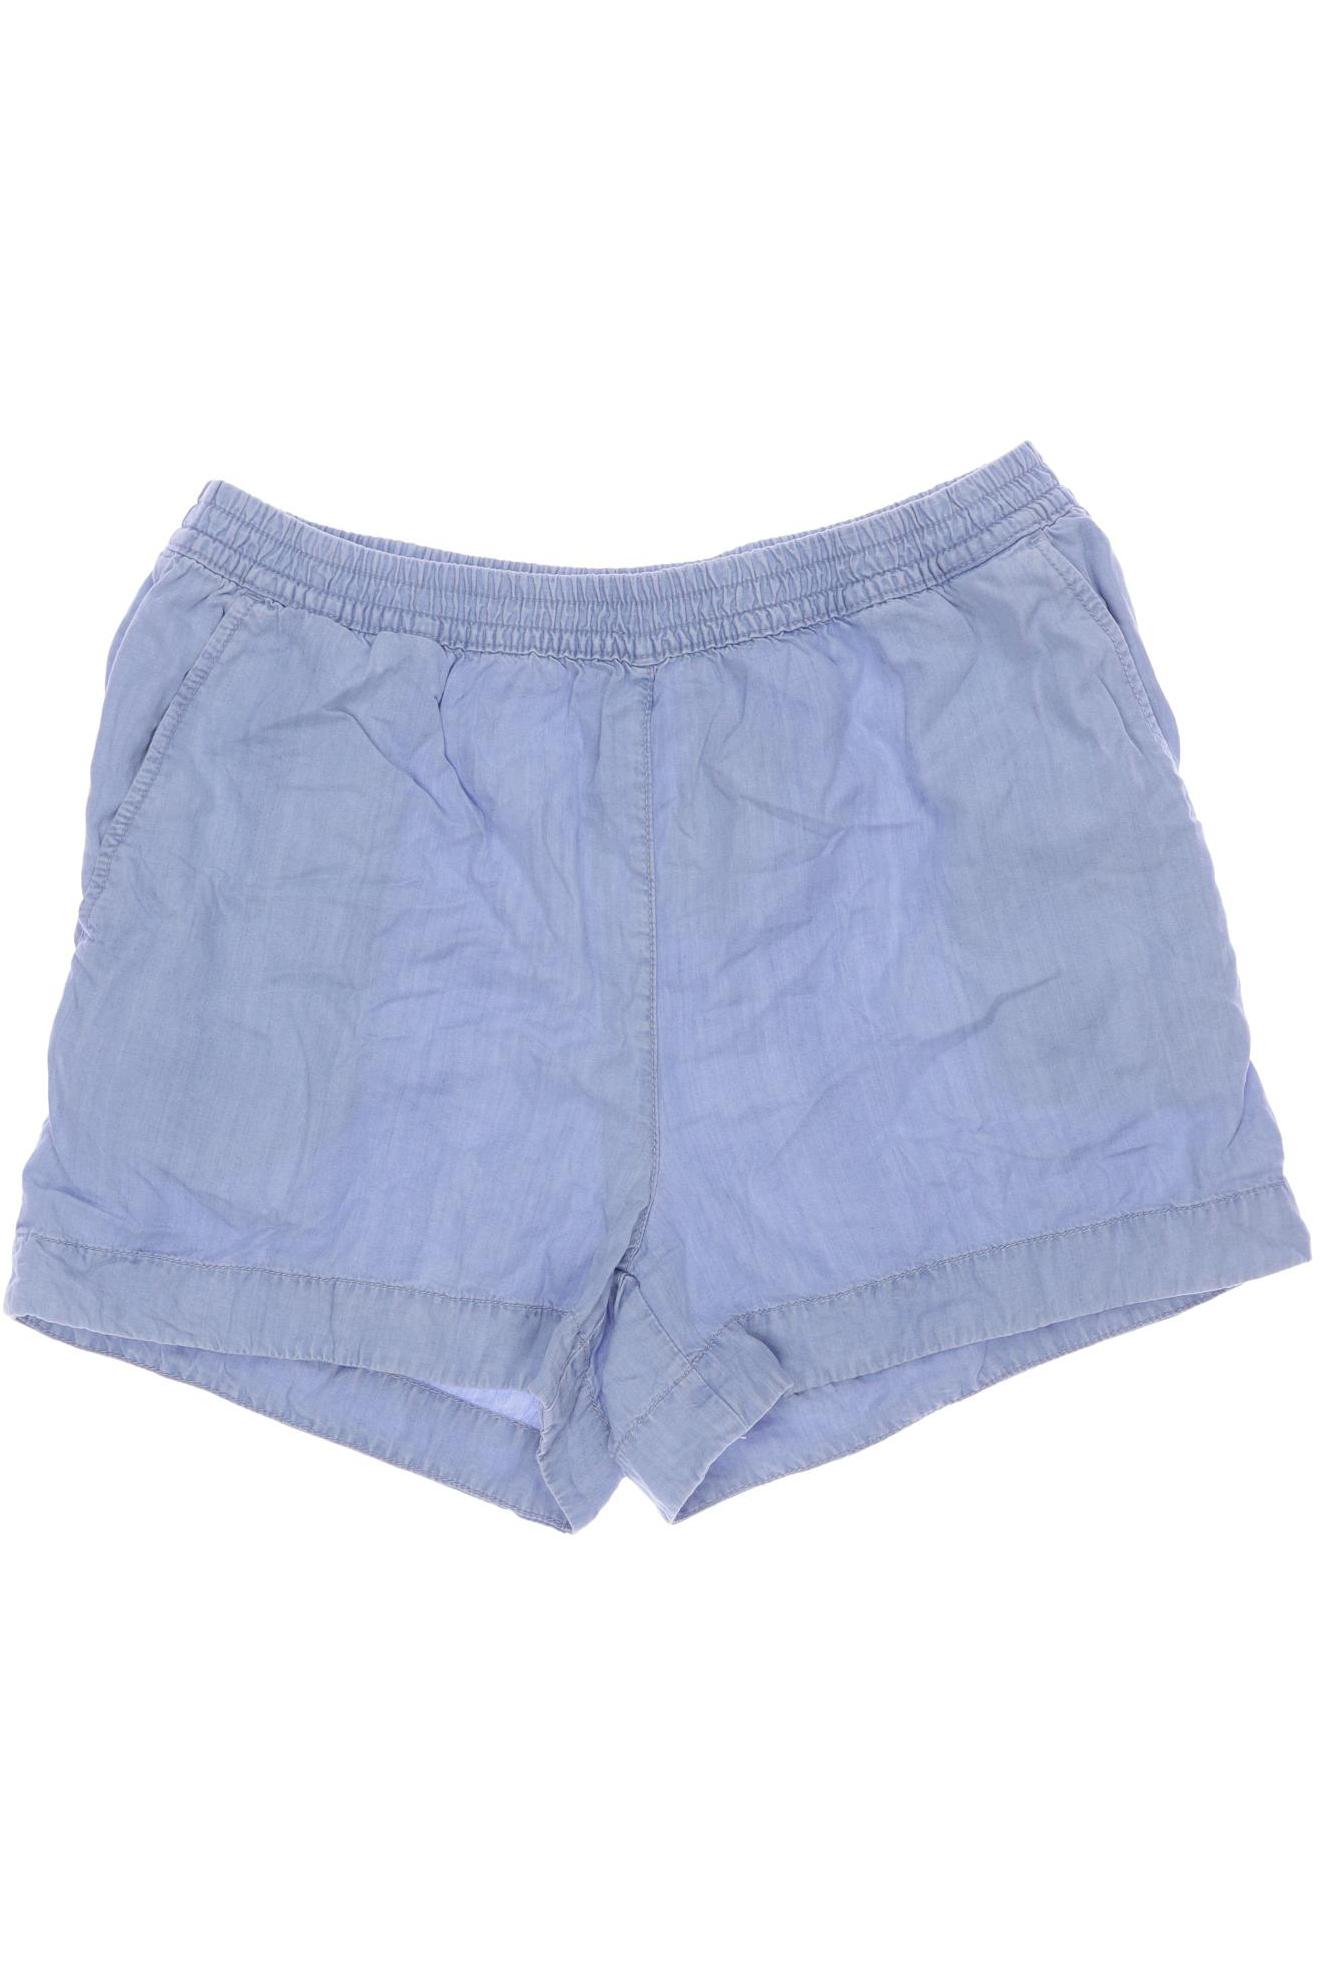 H&M Damen Shorts, hellblau, Gr. 42 von H&M